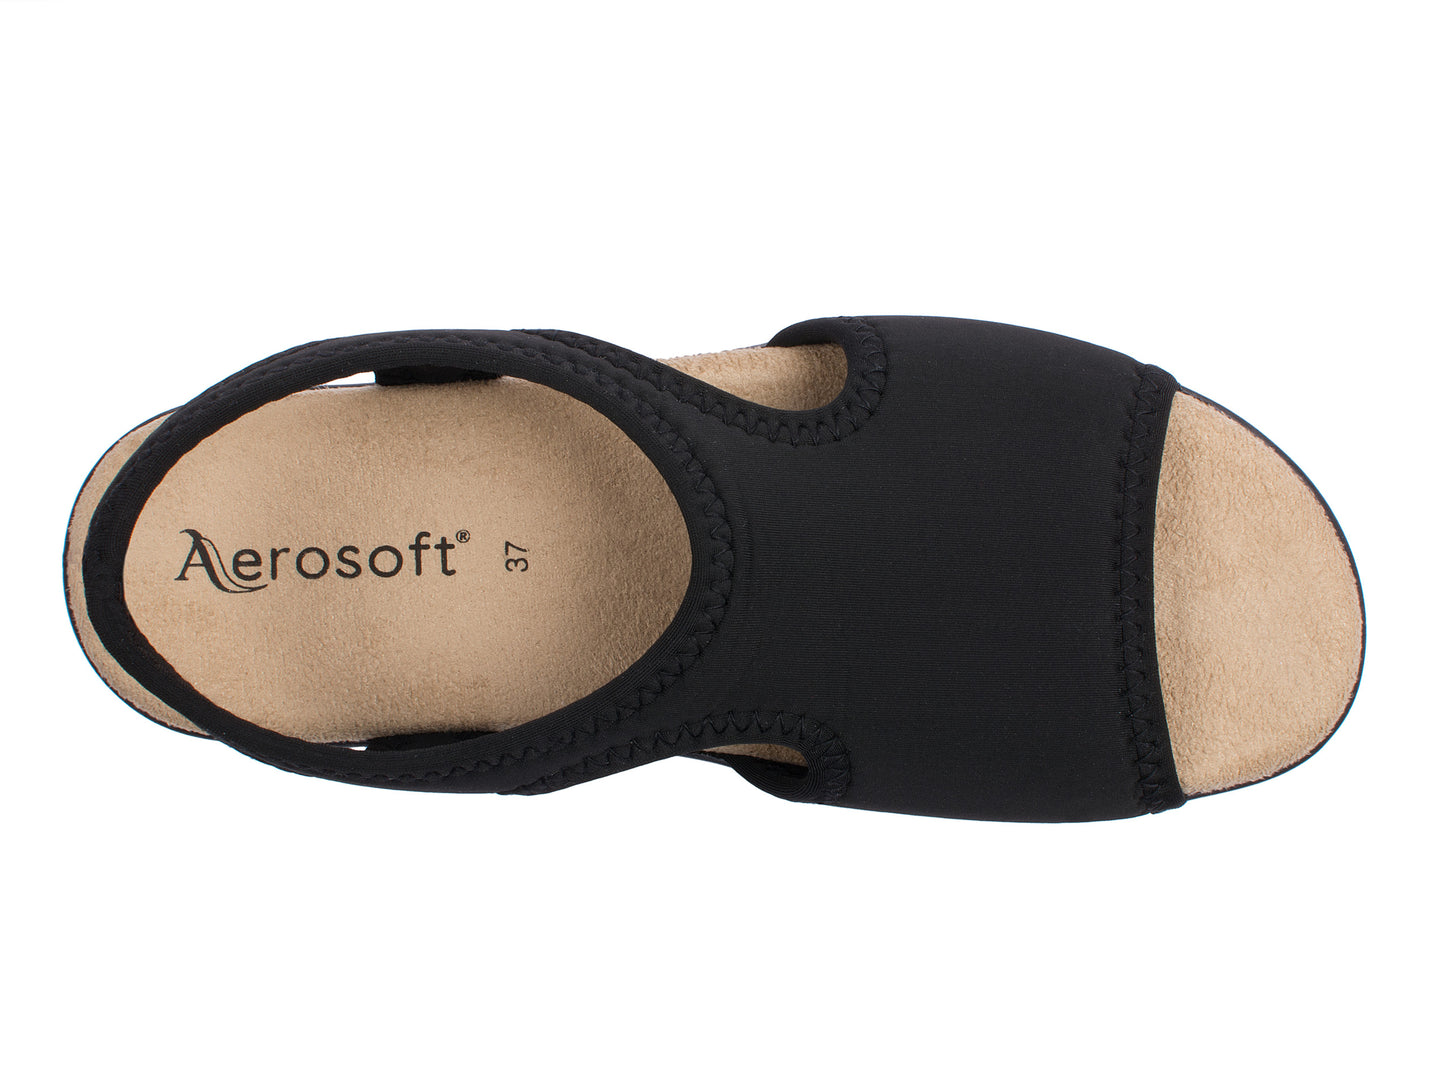 Damen Stretch Sandalette Modell Stretch 05 von Aerosoft in Farbe schwarz von oben